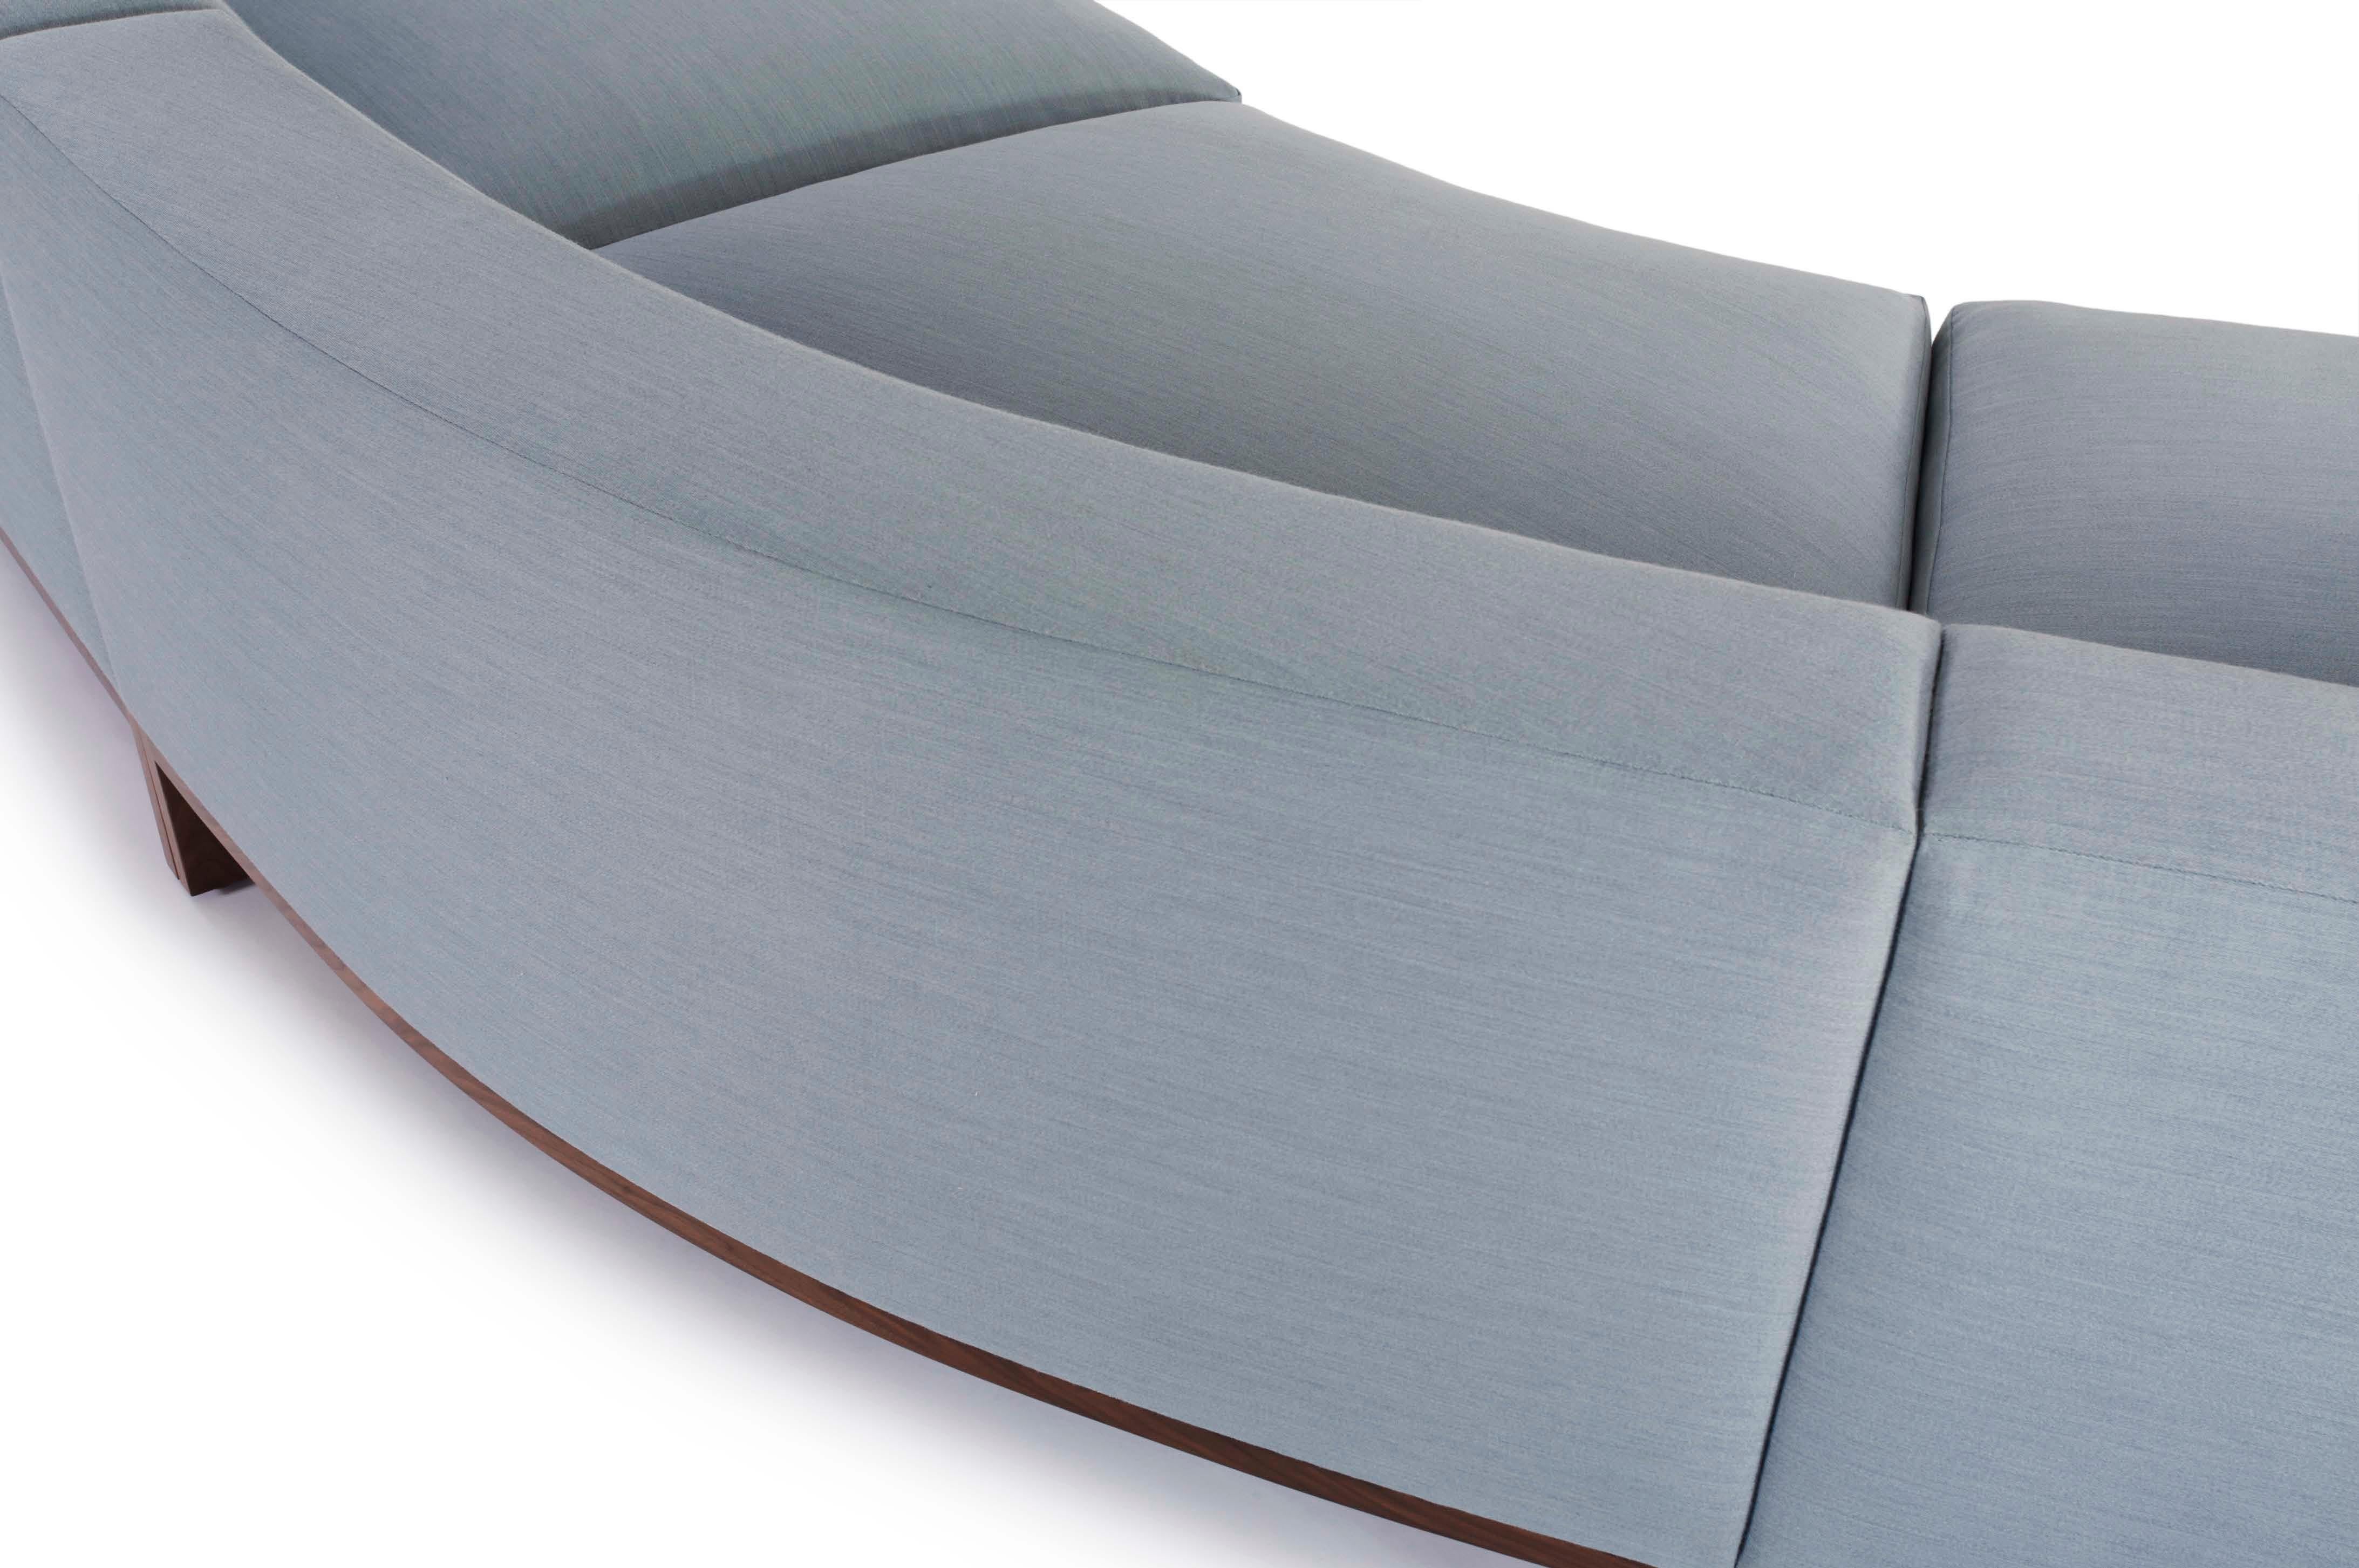 Einfache Linien mit einer einzigen subtilen Kurve machen das Sofa Loft elegant und energisch frisch. Das Design ist klassisch minimalistisch und raffiniert und stellt herkömmliche Vorstellungen von Größe und Raum in Frage.